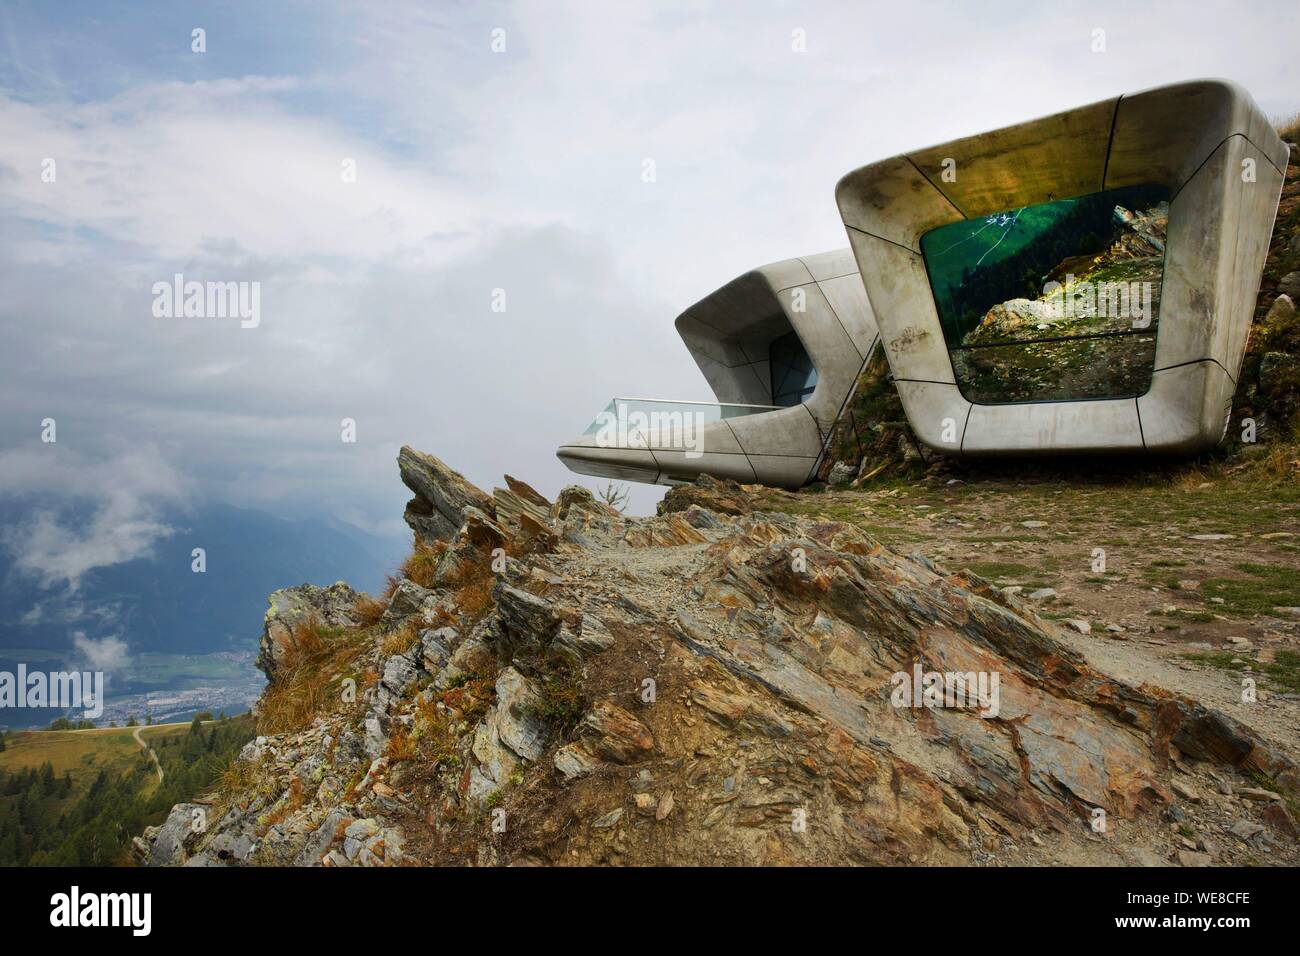 L'Italia, provincia autonoma di Bolzano, Val Pusteria, Messner Mountain Museum, museo futurista firmato Zaha Hadid incrostato in roccia alla sommità di una montagna e dedicato alla montagna e all'alpinista Reinhold Messner Foto Stock